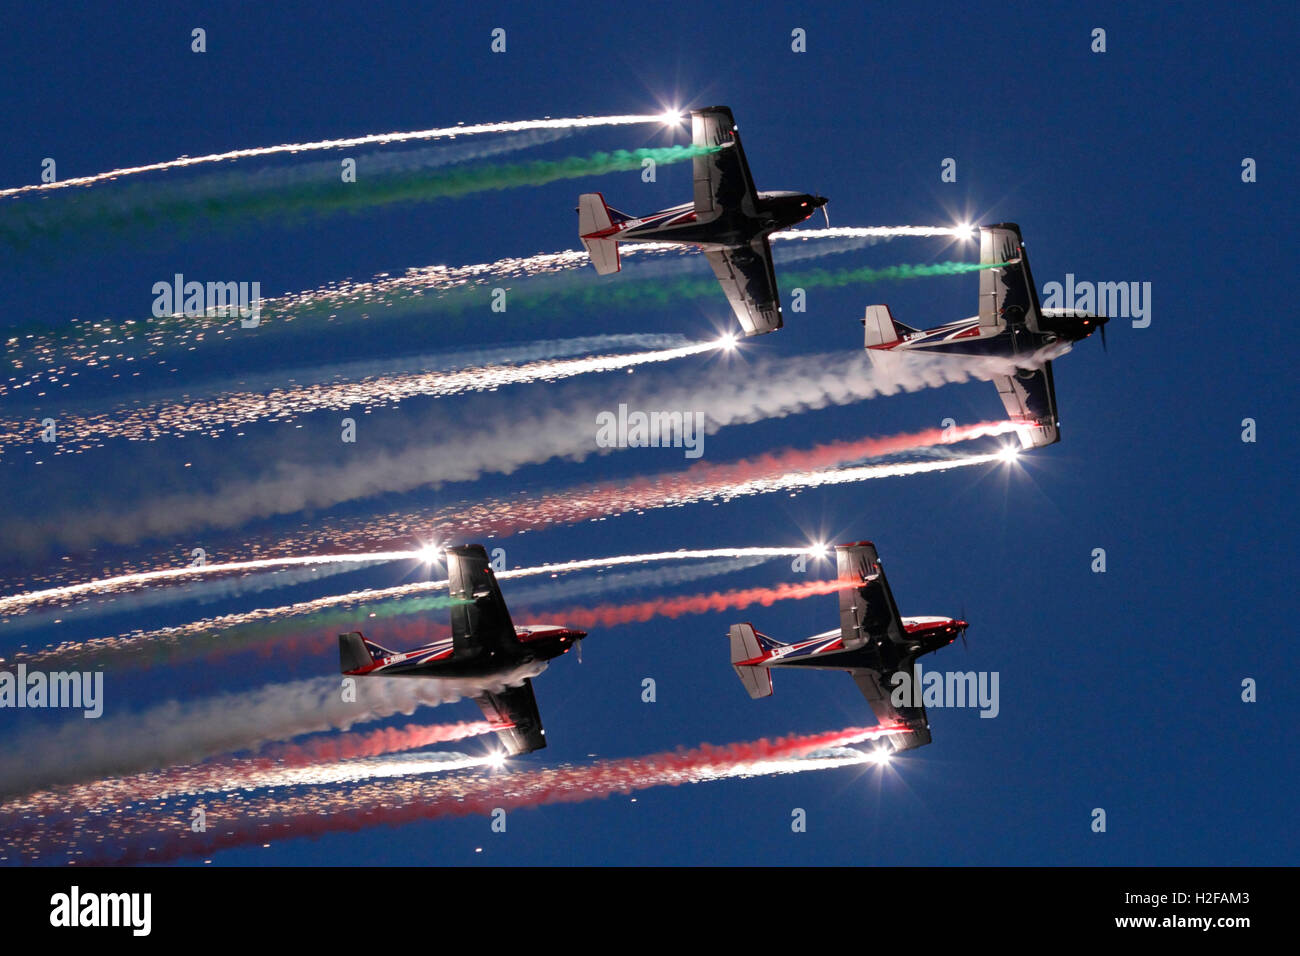 L'équipe de Pioneer battant leur Alpi Aviation 300 avions dans un meeting aérien spectaculaire au crépuscule d'affichage Banque D'Images